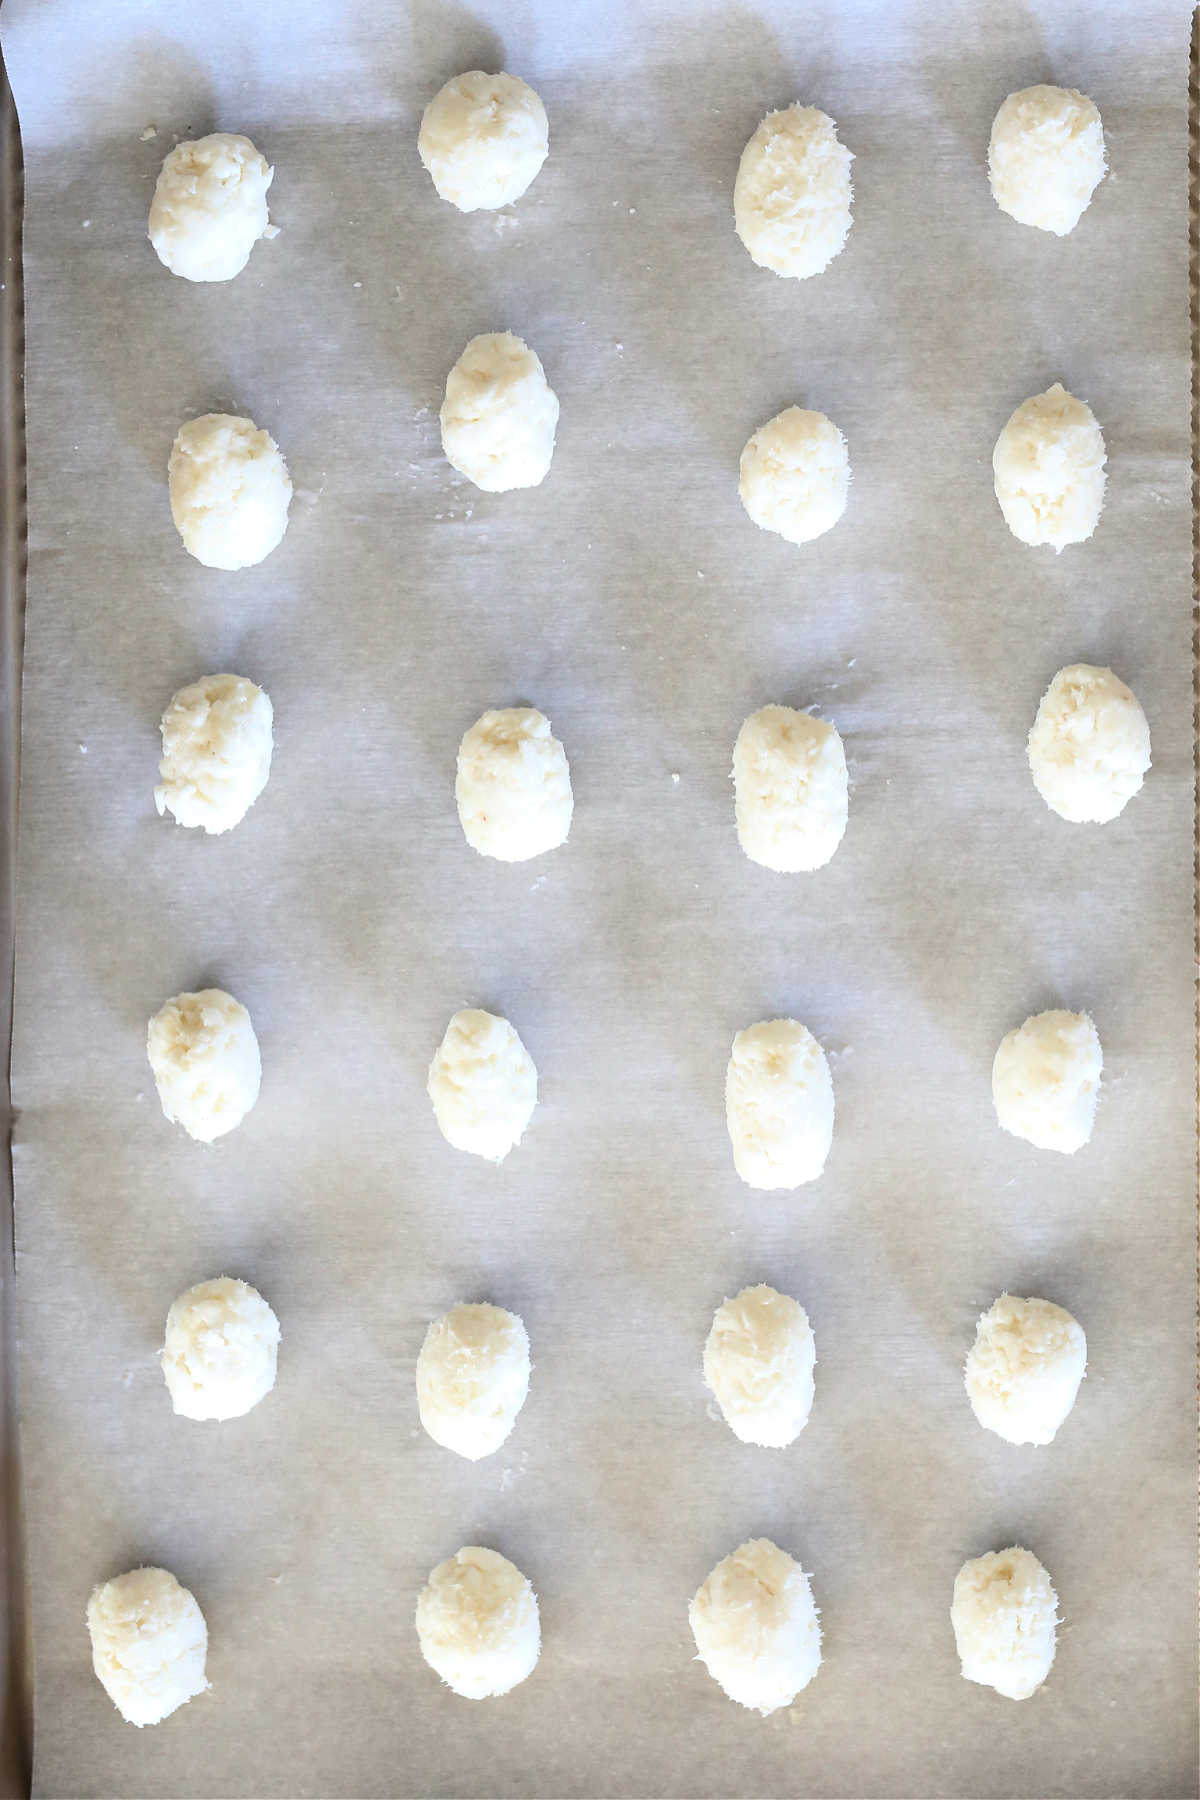 irish potato candy shaped like a potato on a baking sheet